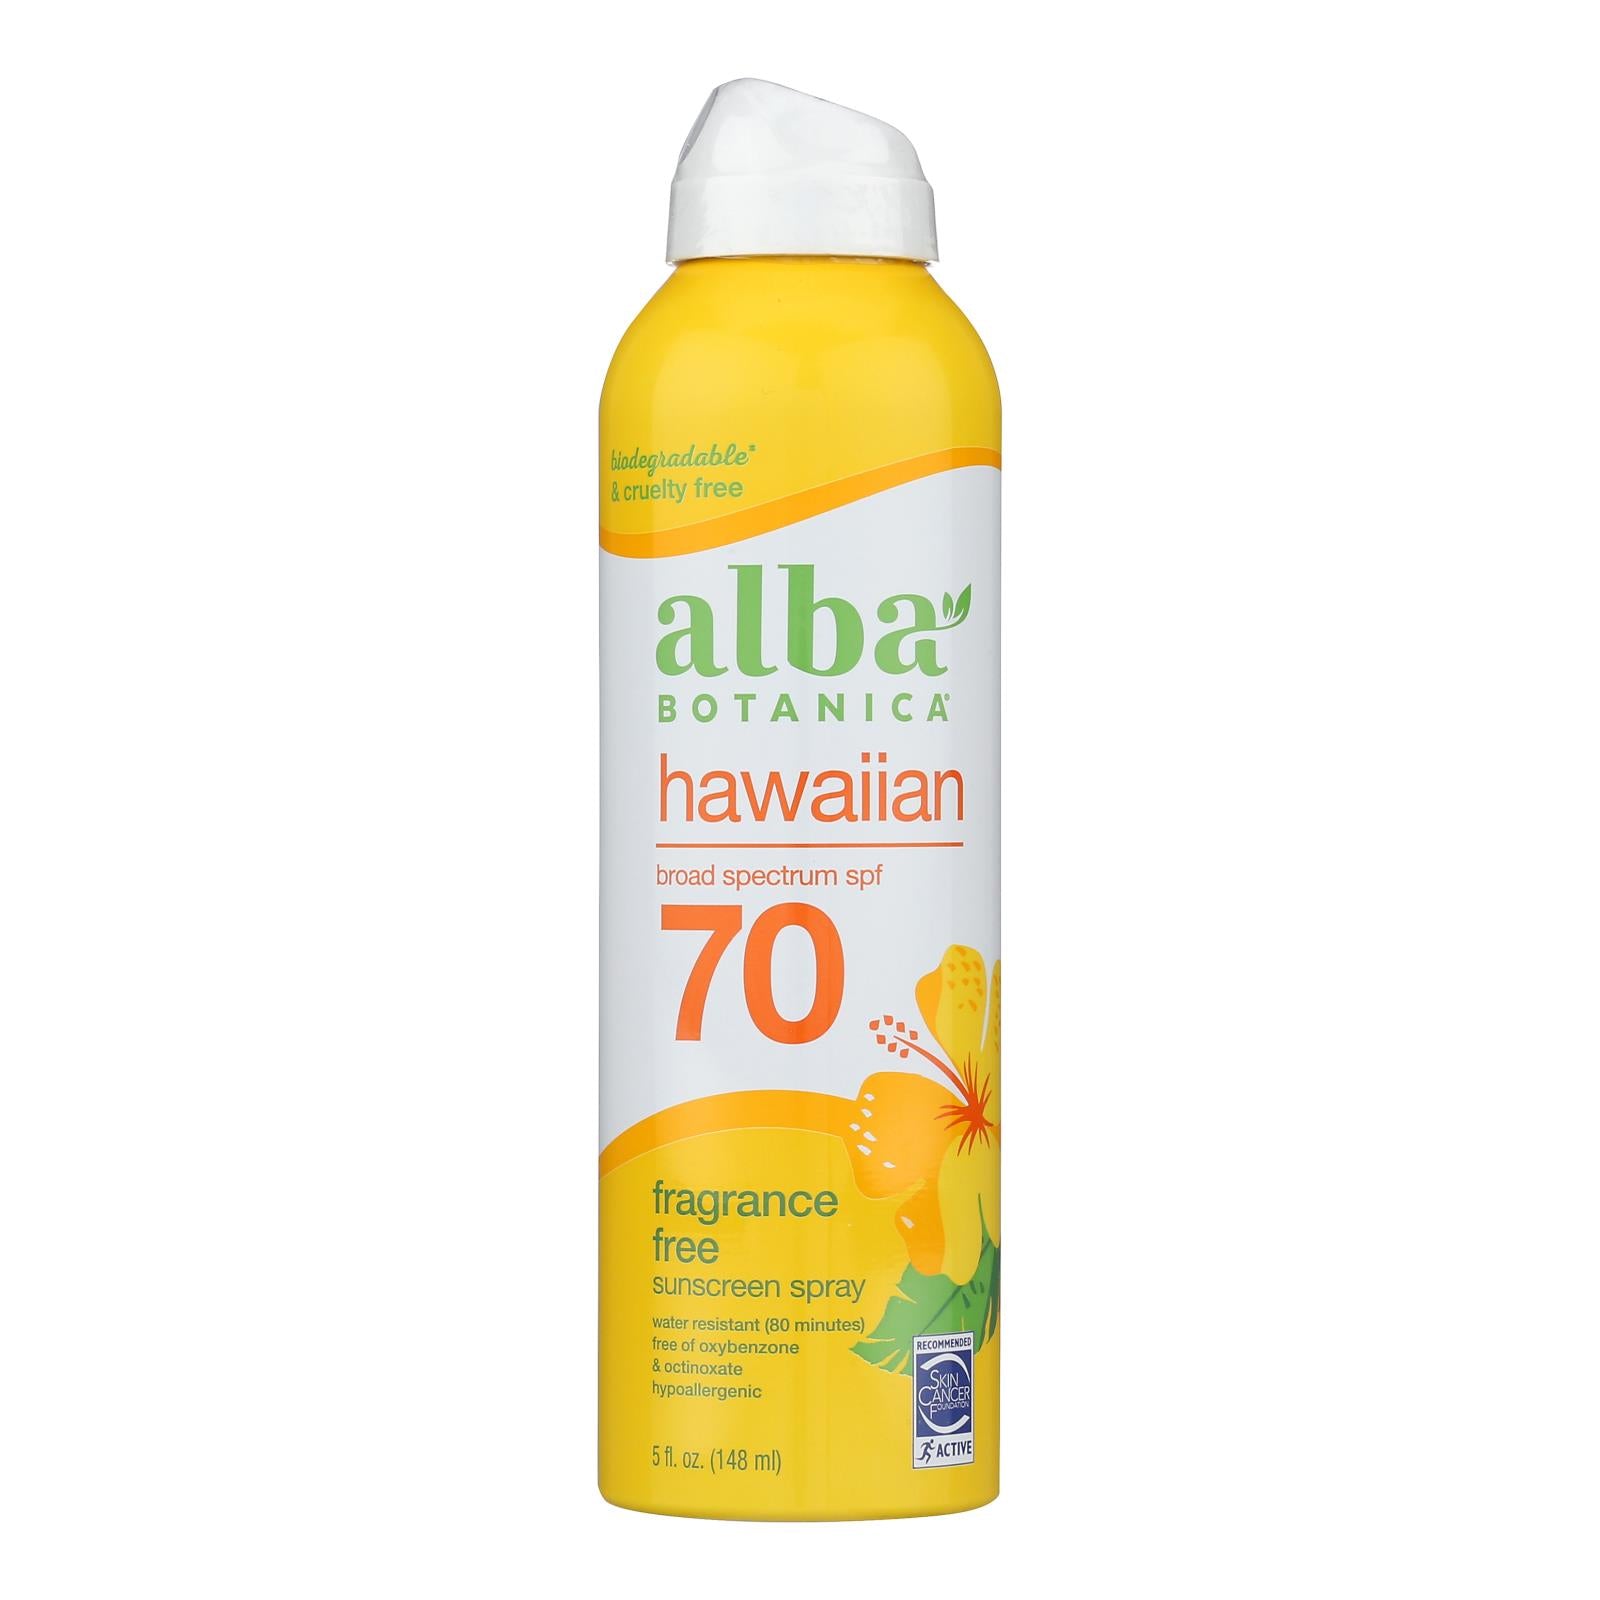 Alba Botanica - Sunscreen Spray For Face Mineral Spf 70 - 1 Each-5 Fluid Ounces